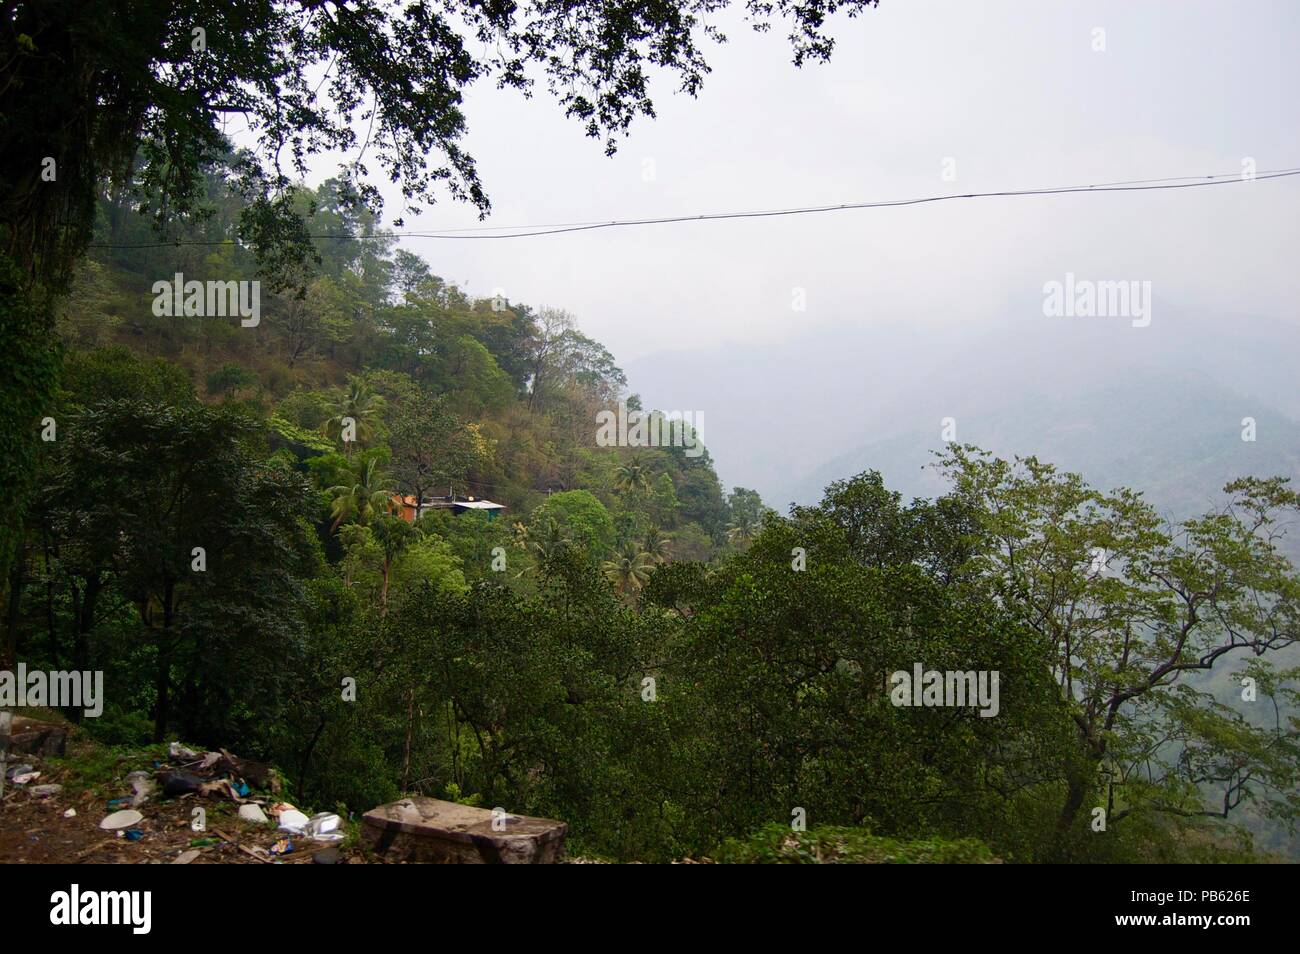 Herrlicher Blick auf das Tal in Kerala (Indien): Landschaft mit idyllischen unberührte Natur, Bäume bilden einen üppigen, grünen Dschungel und einem nebligen Himmel Stockfoto